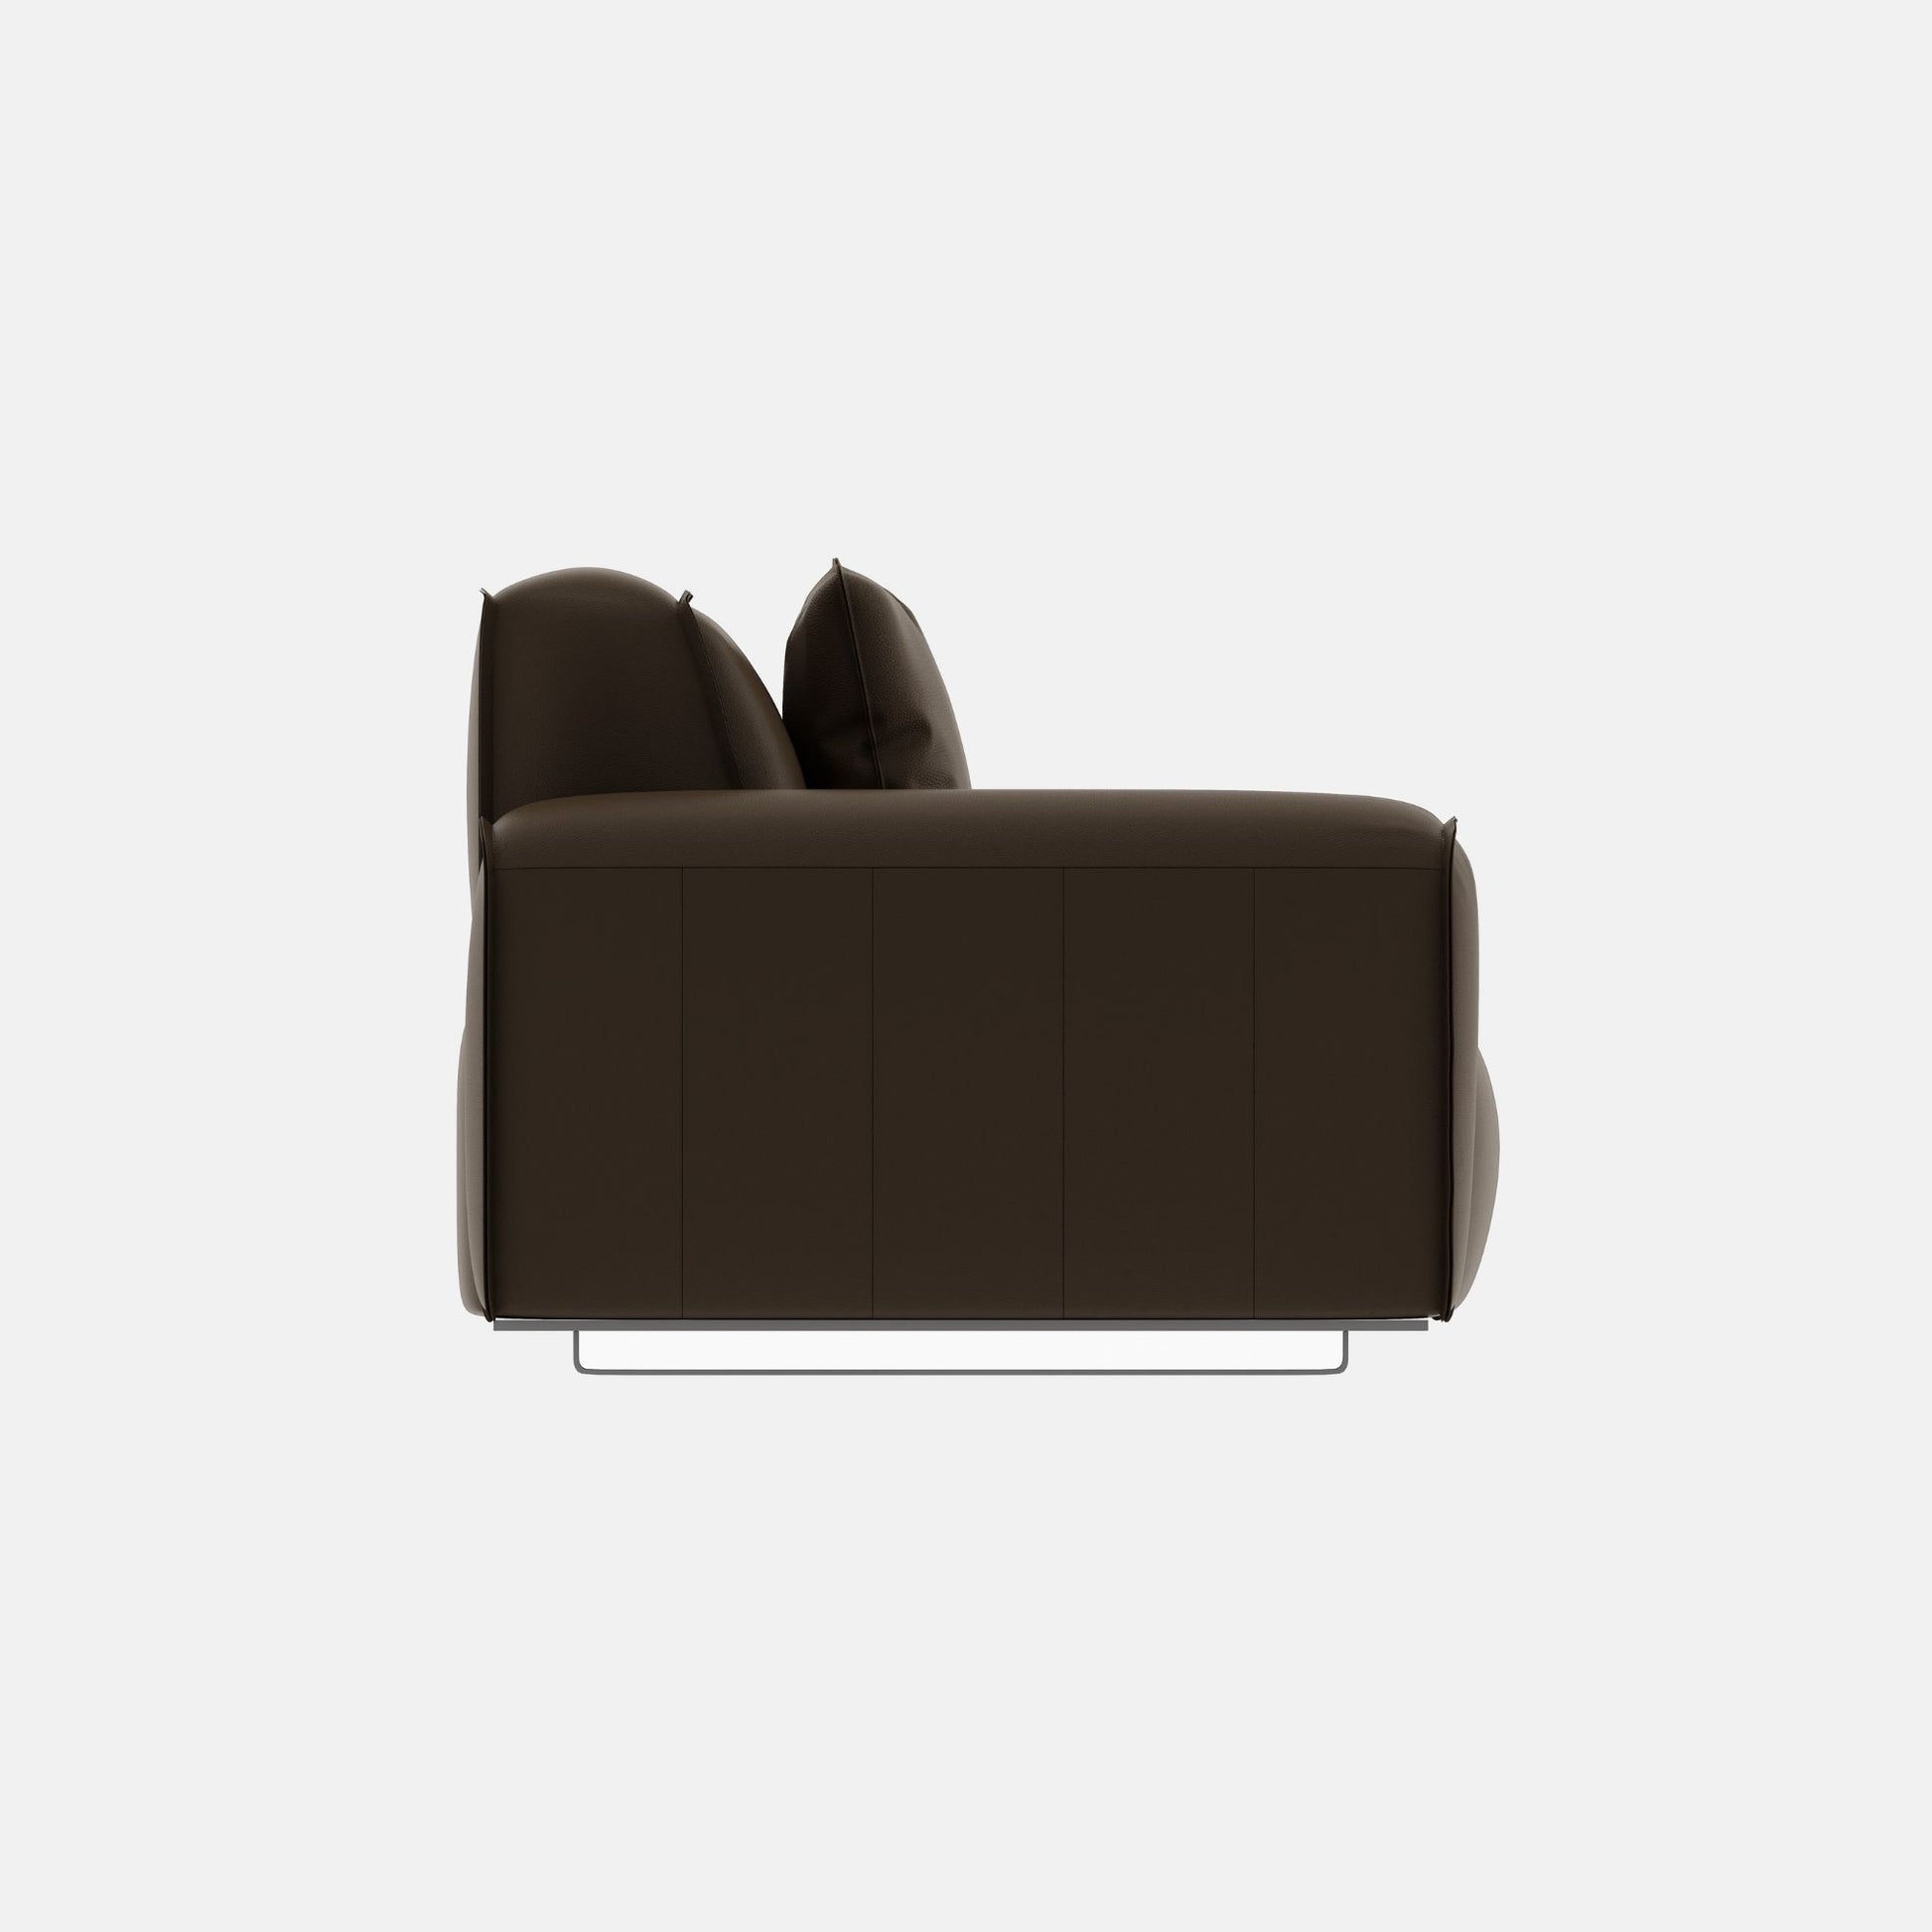 Colby dark brown top grain full leather 3 seat sofa